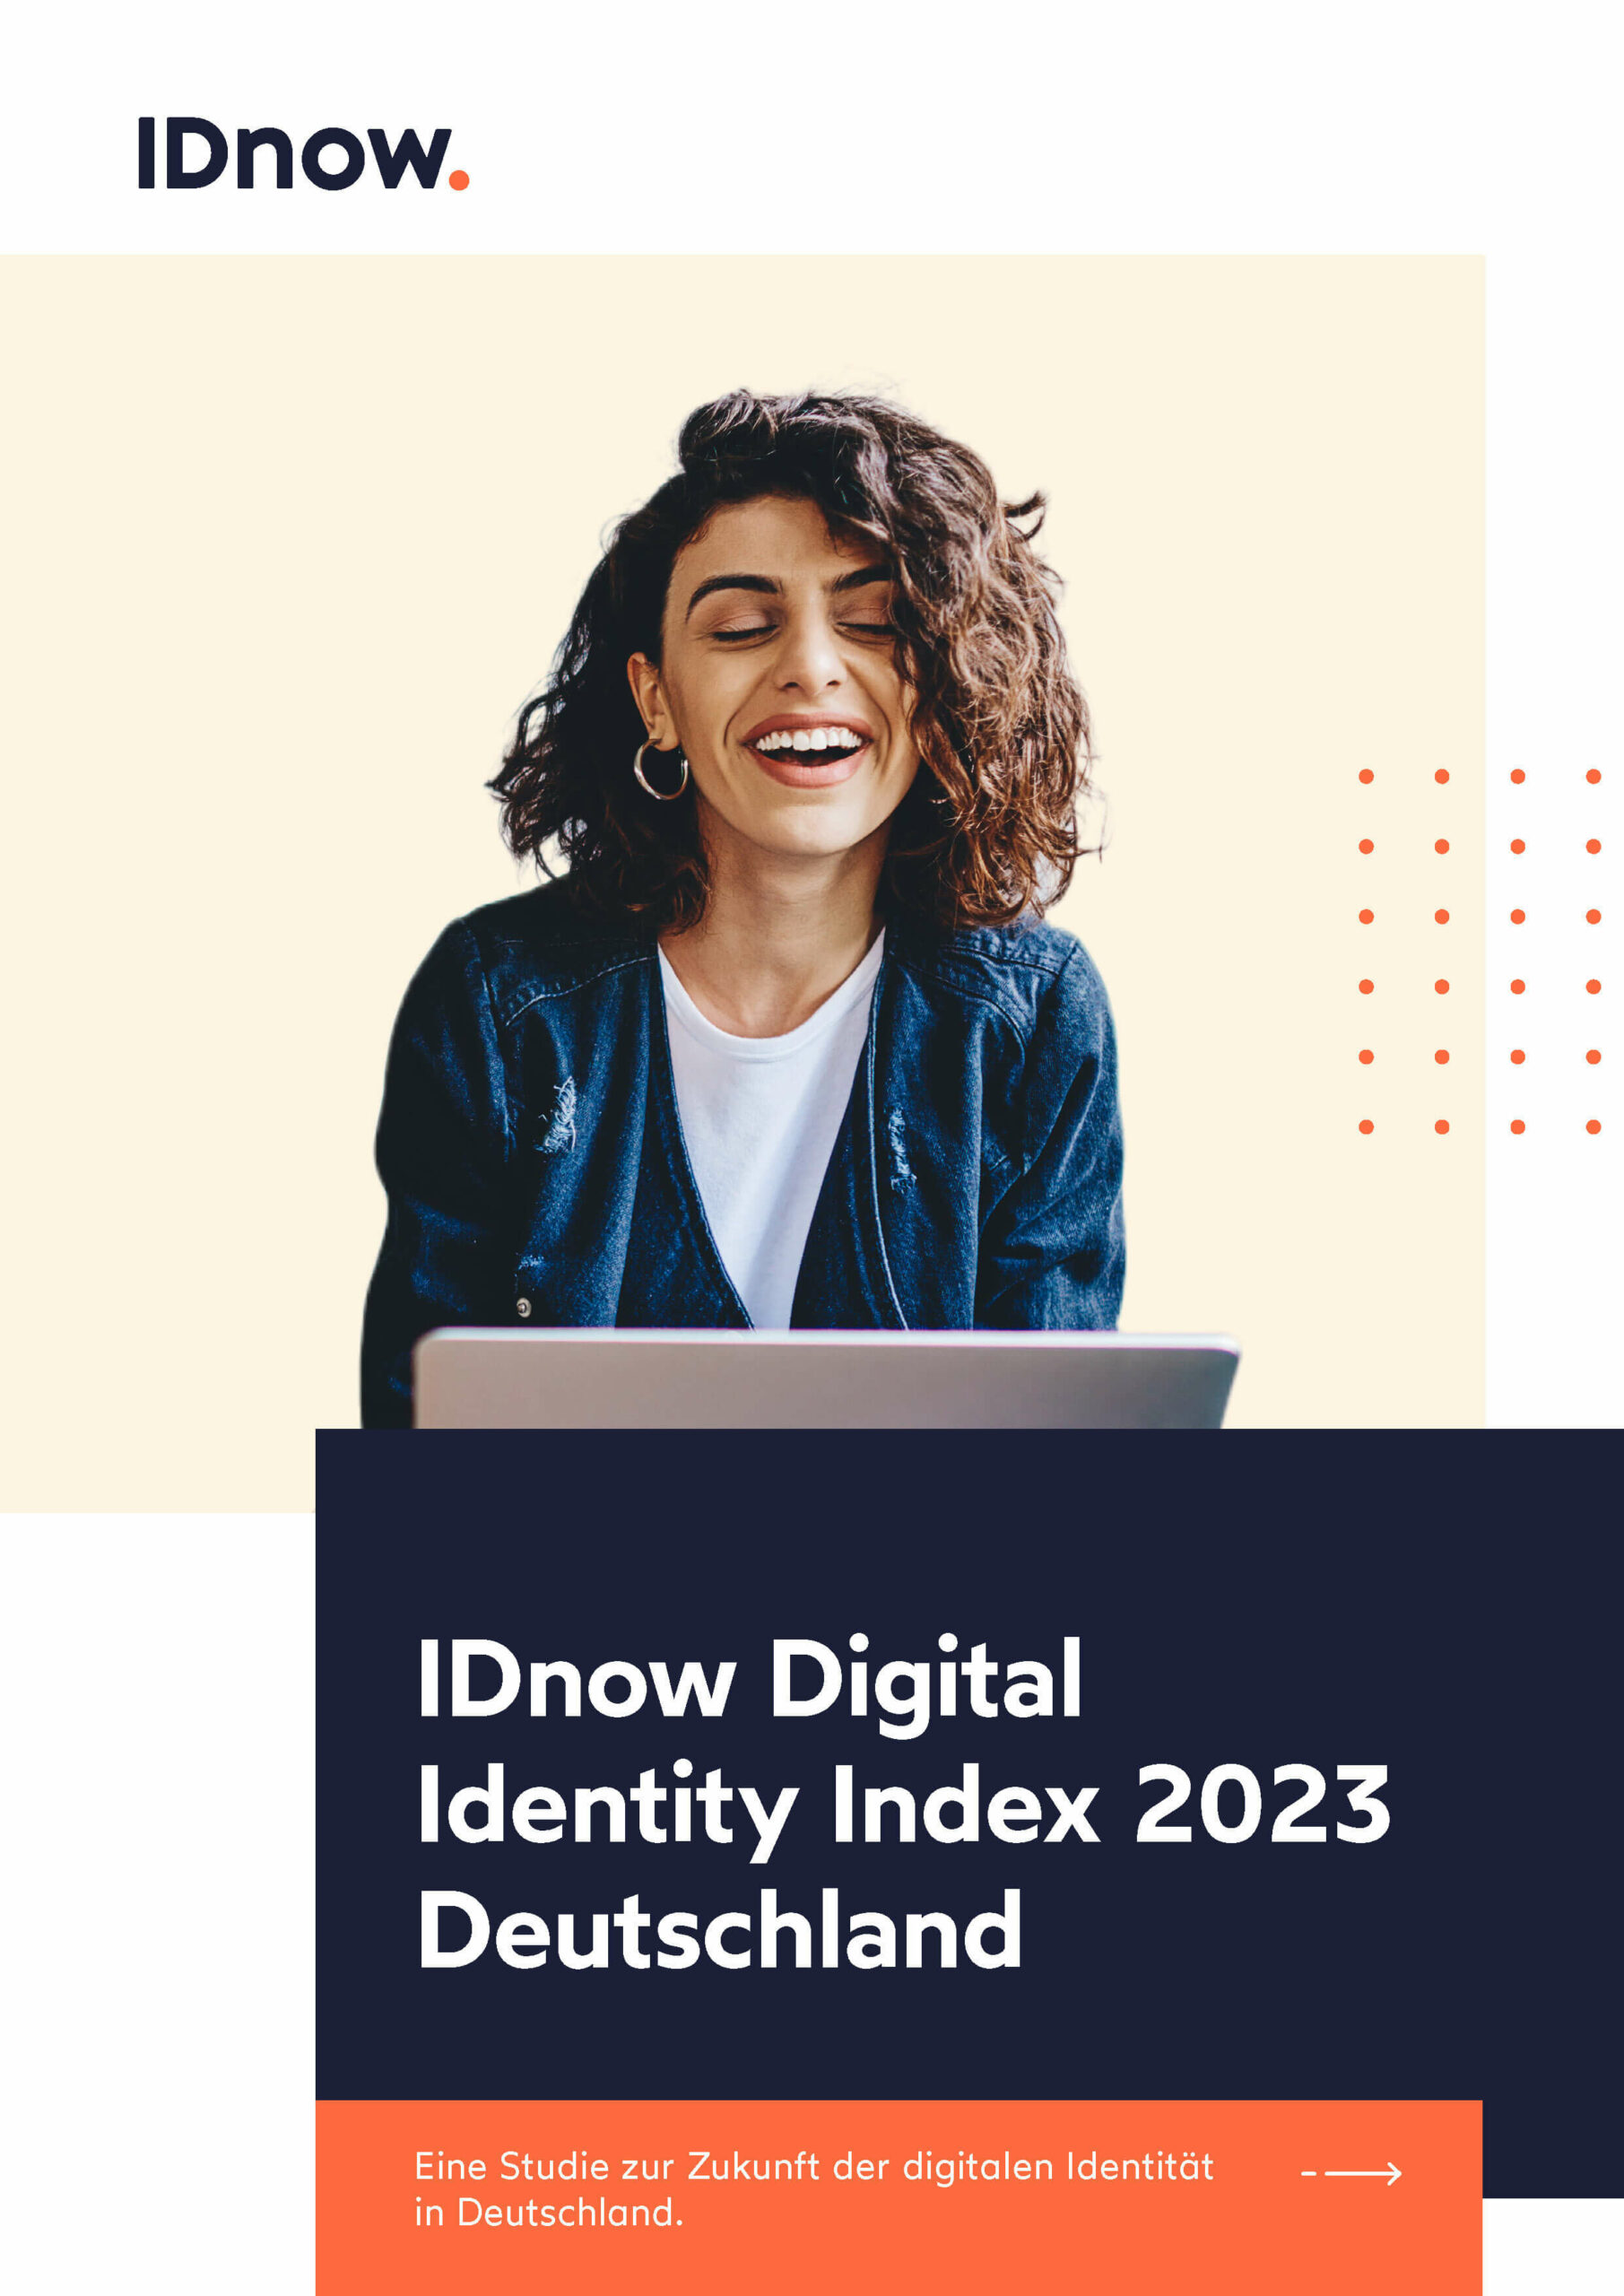 IDnow Digital Identity Index 2023 Deutschland_Page_01